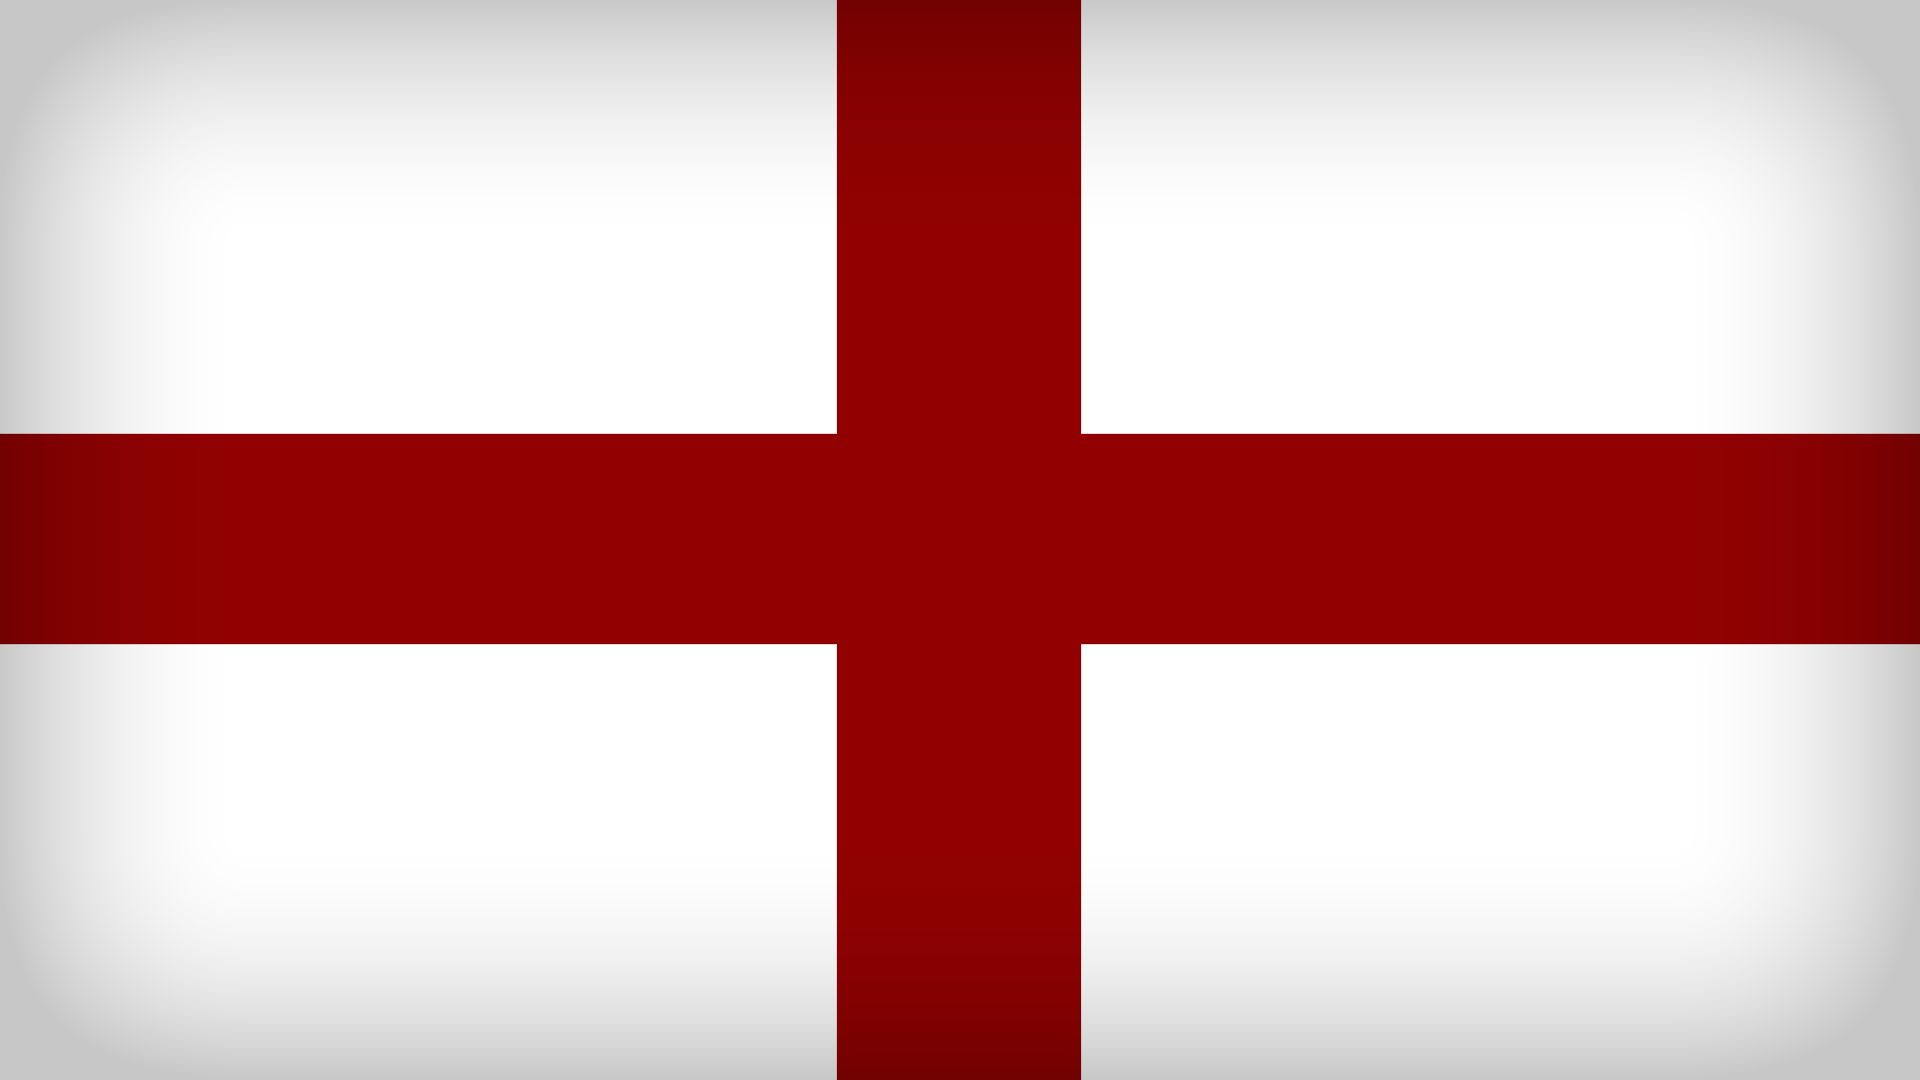 Скачать обои Флаг Англии на телефон бесплатно